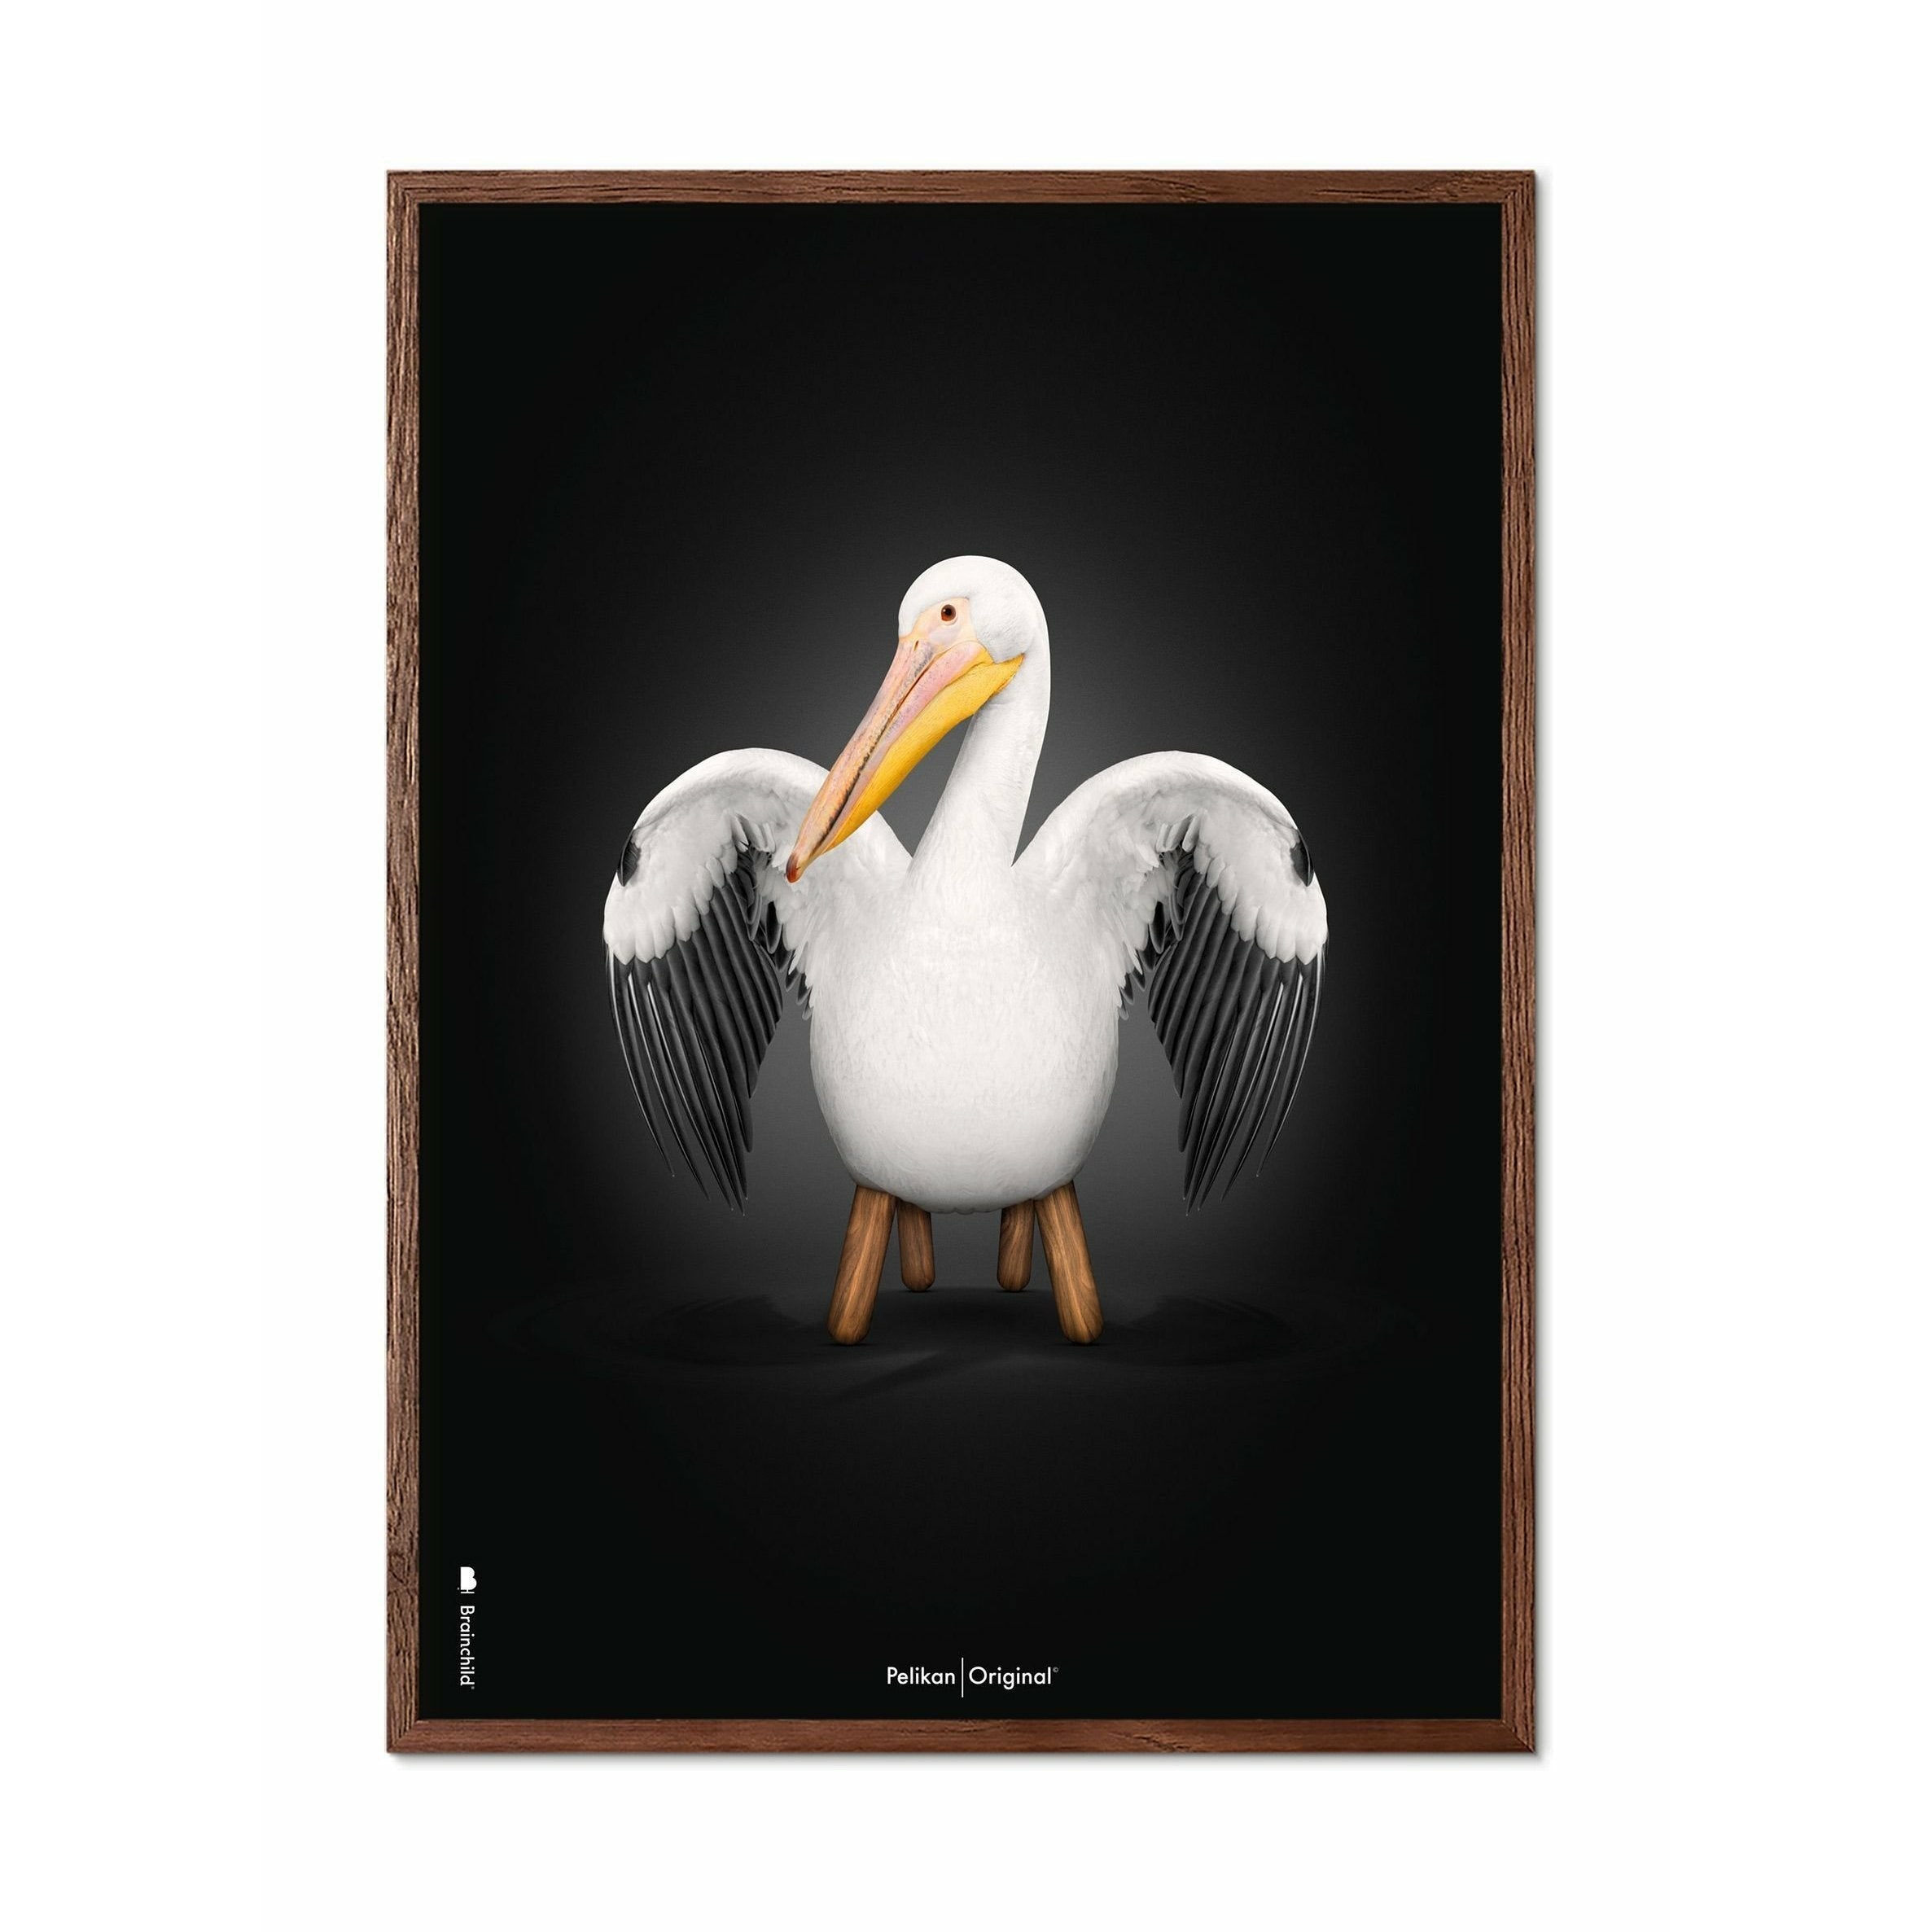 Brainchild Poster classique Pelikan, cadre en bois foncé 30x40 cm, fond noir